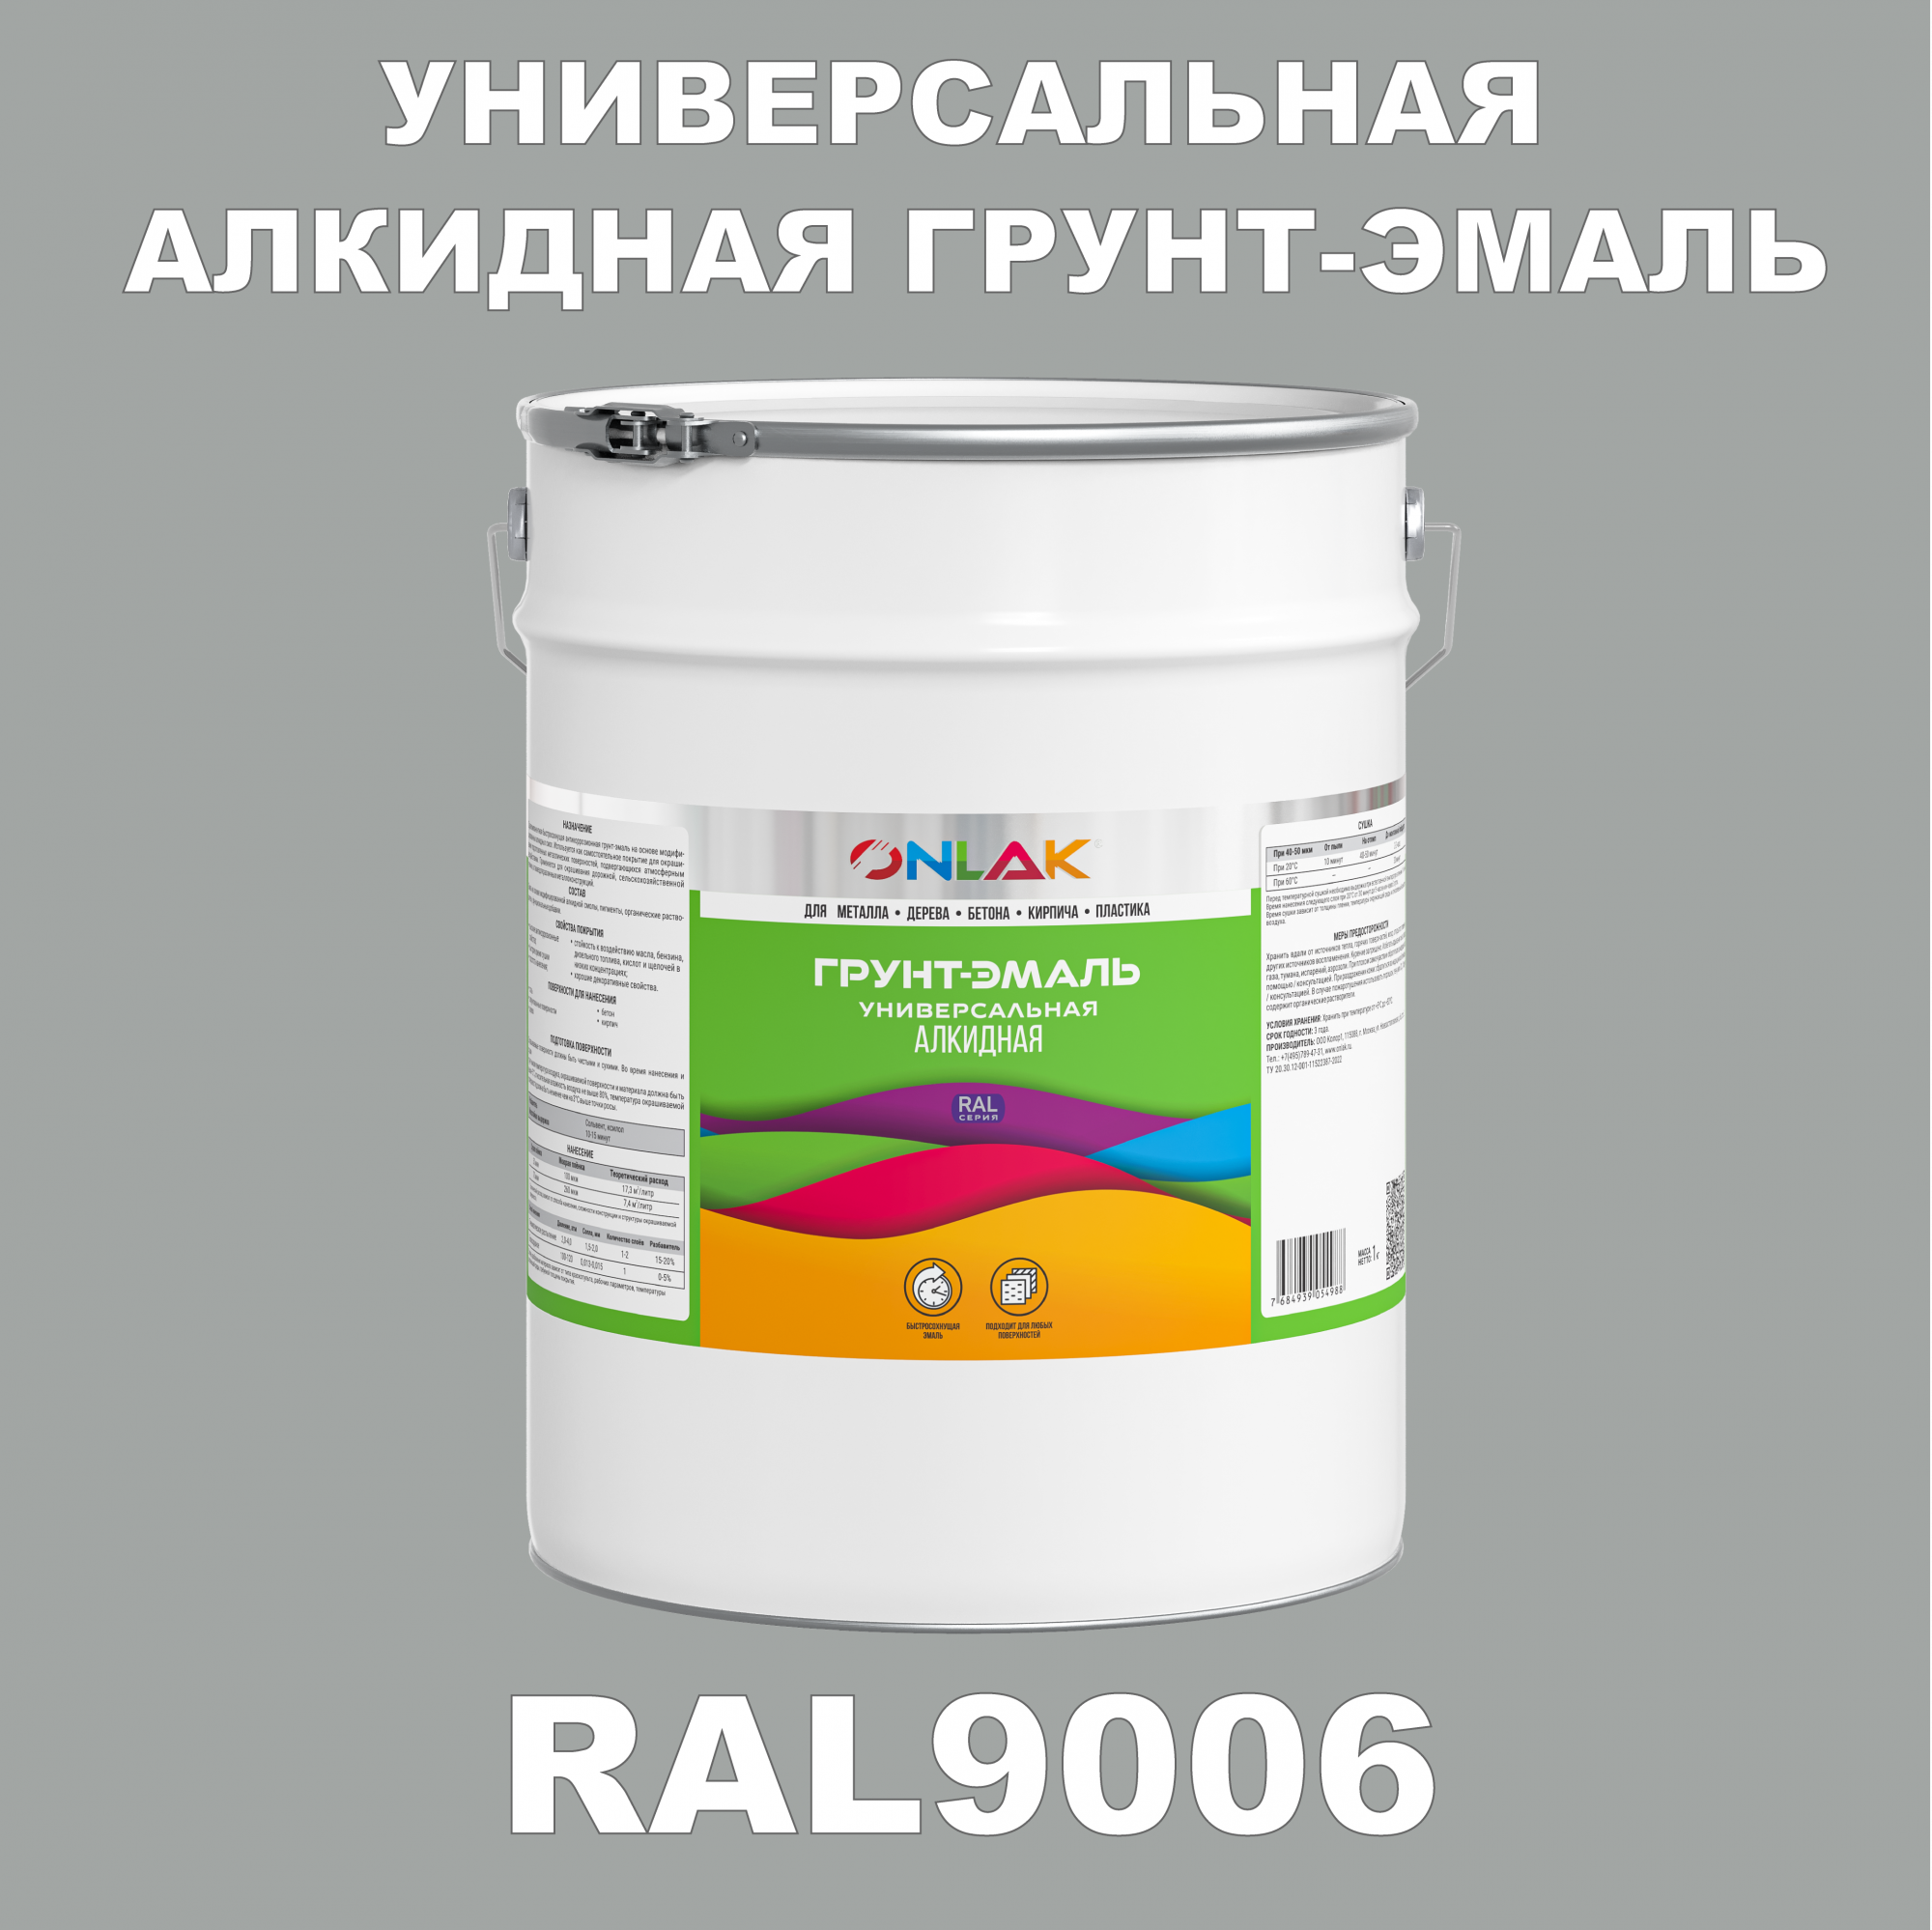 Грунт-эмаль ONLAK 1К RAL9006 антикоррозионная алкидная по металлу по ржавчине 20 кг грунт эмаль yollo по ржавчине алкидная зеленая 0 9 кг